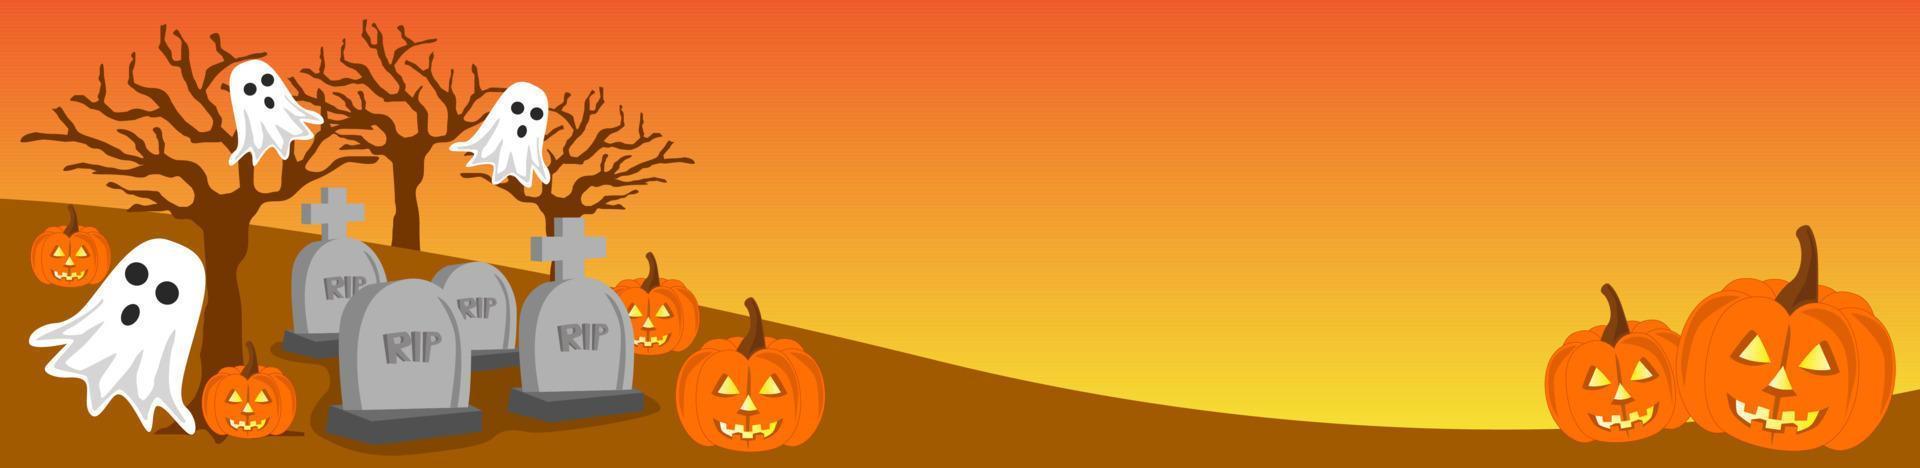 illustration de bannière d'halloween, avec thème jack o lantern, fantôme et atmosphère funéraire fantasmagorique vecteur